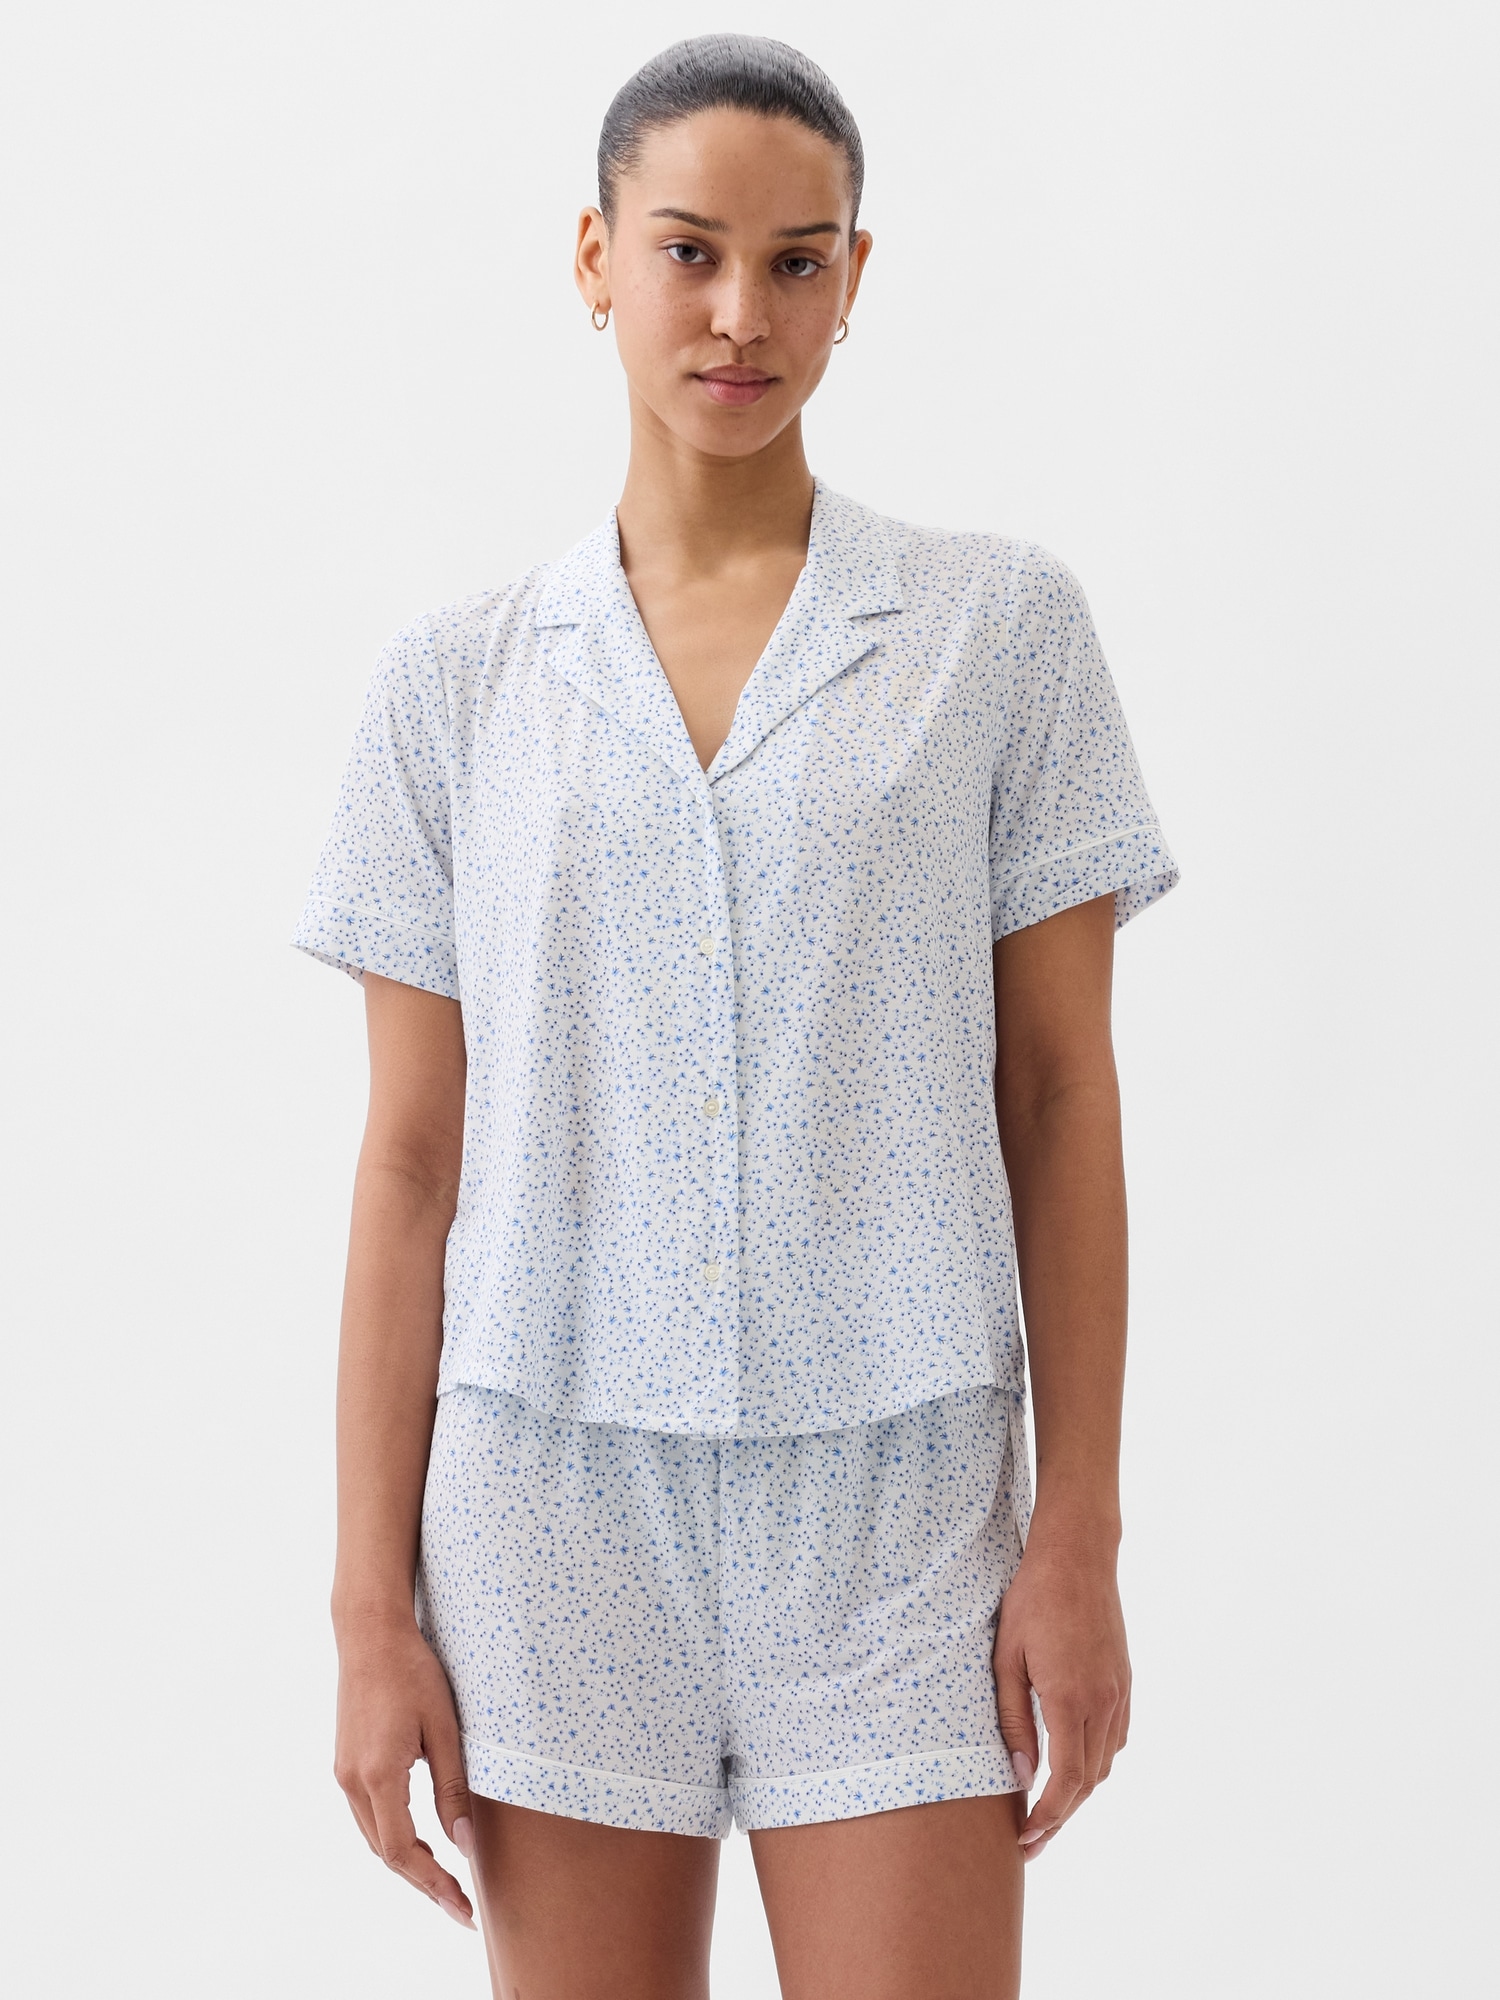 Women Sleepwear Set V Neck Top Pants Modal Pajamas Nightwear, Blue